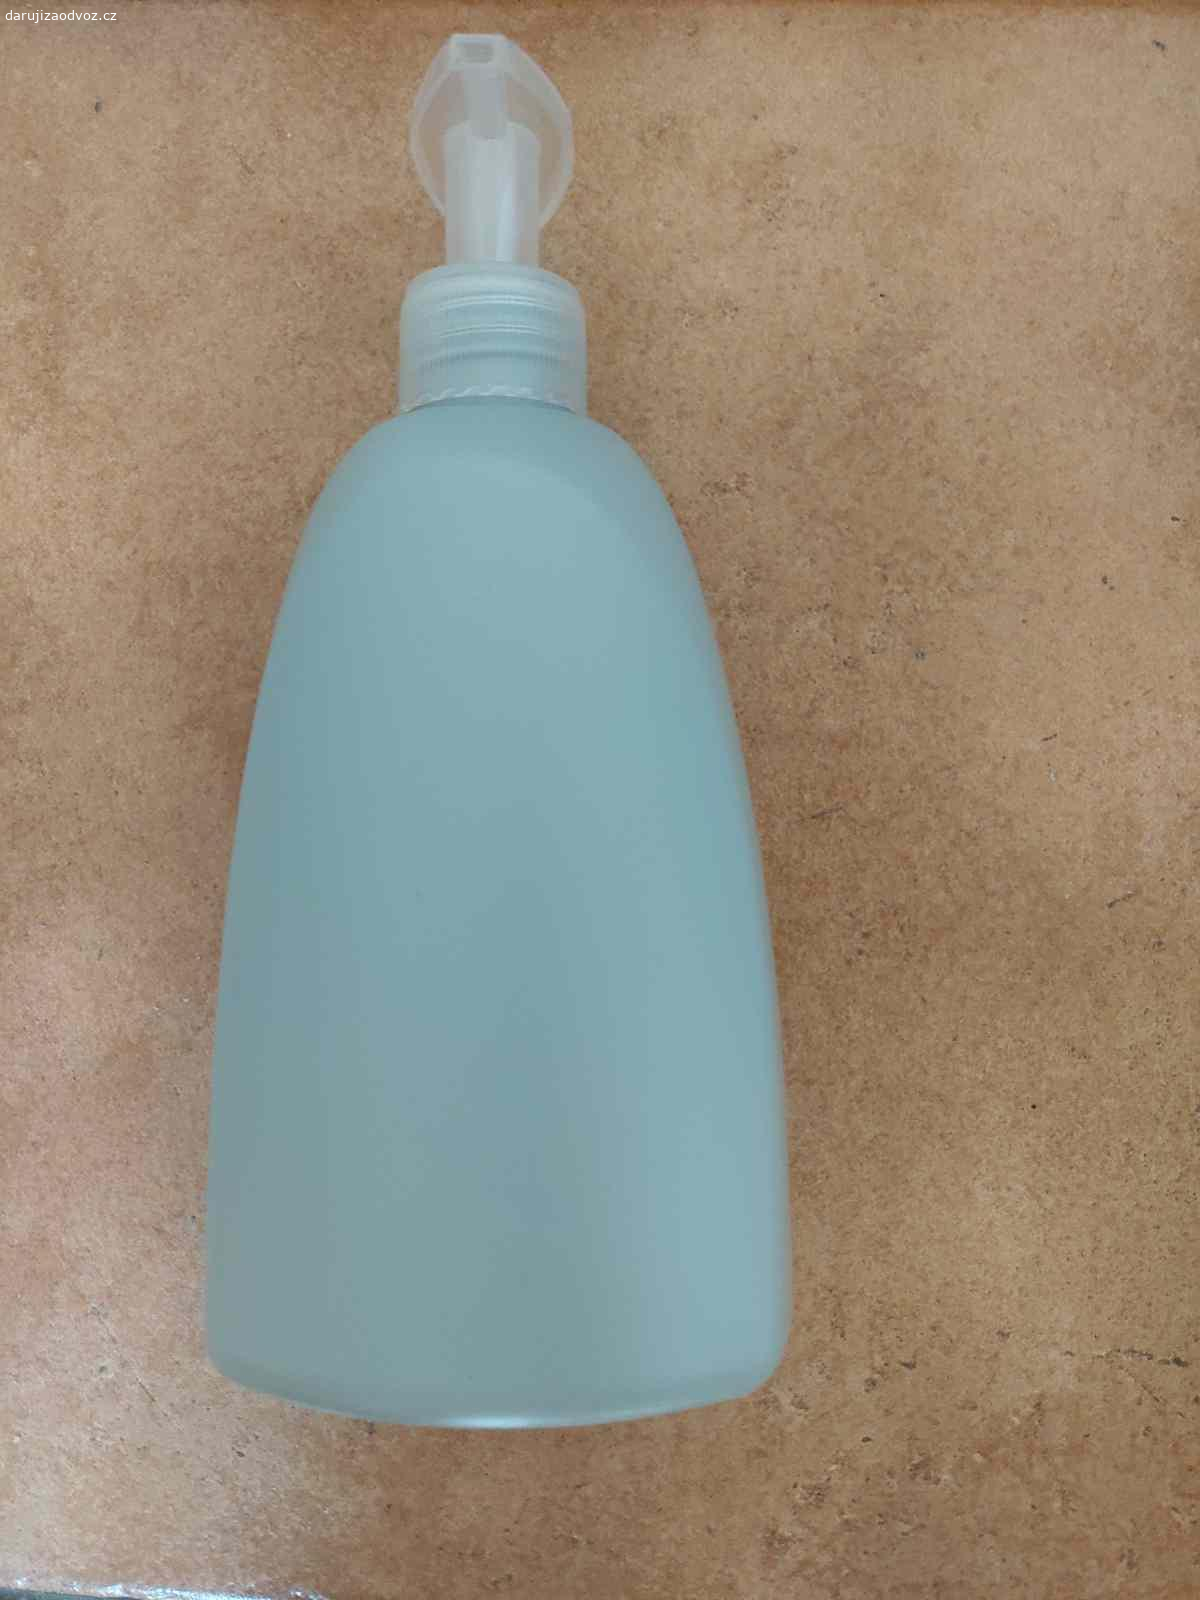 Dávkovače na mýdlo, 500 ml, plast. Daruji za odvoz plastové půllitrové dávkovače mýdla, i jednotlivě. Jde o dávkovače od tekutého mýdla Balea z DM drogerie. Použité, ale lze je snadno opakovaně naplnit tekutým mýdlem.